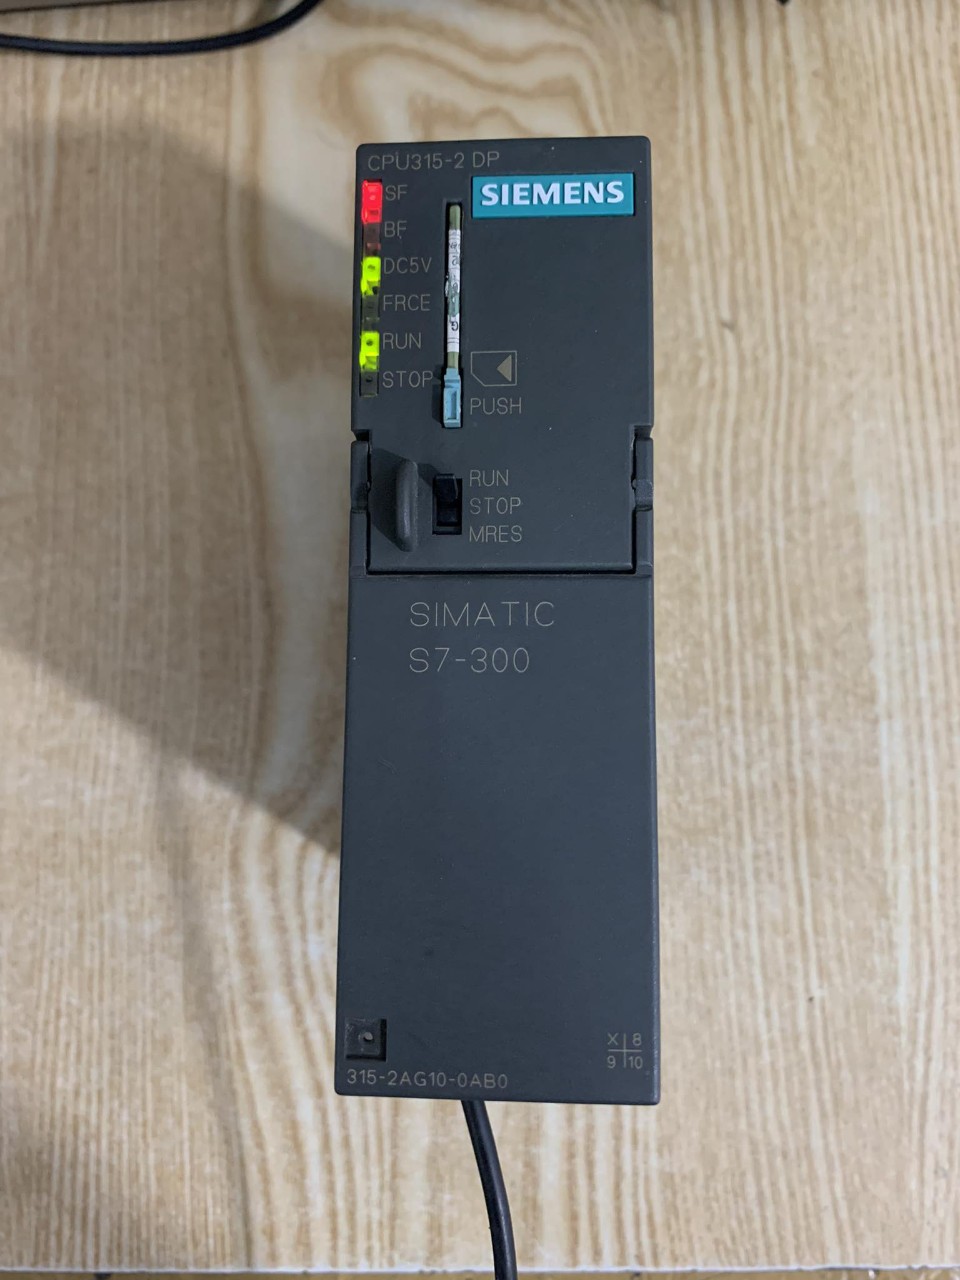 Crack password PLC Siemens CPU315-2DP (315-2AG10-0AB0)